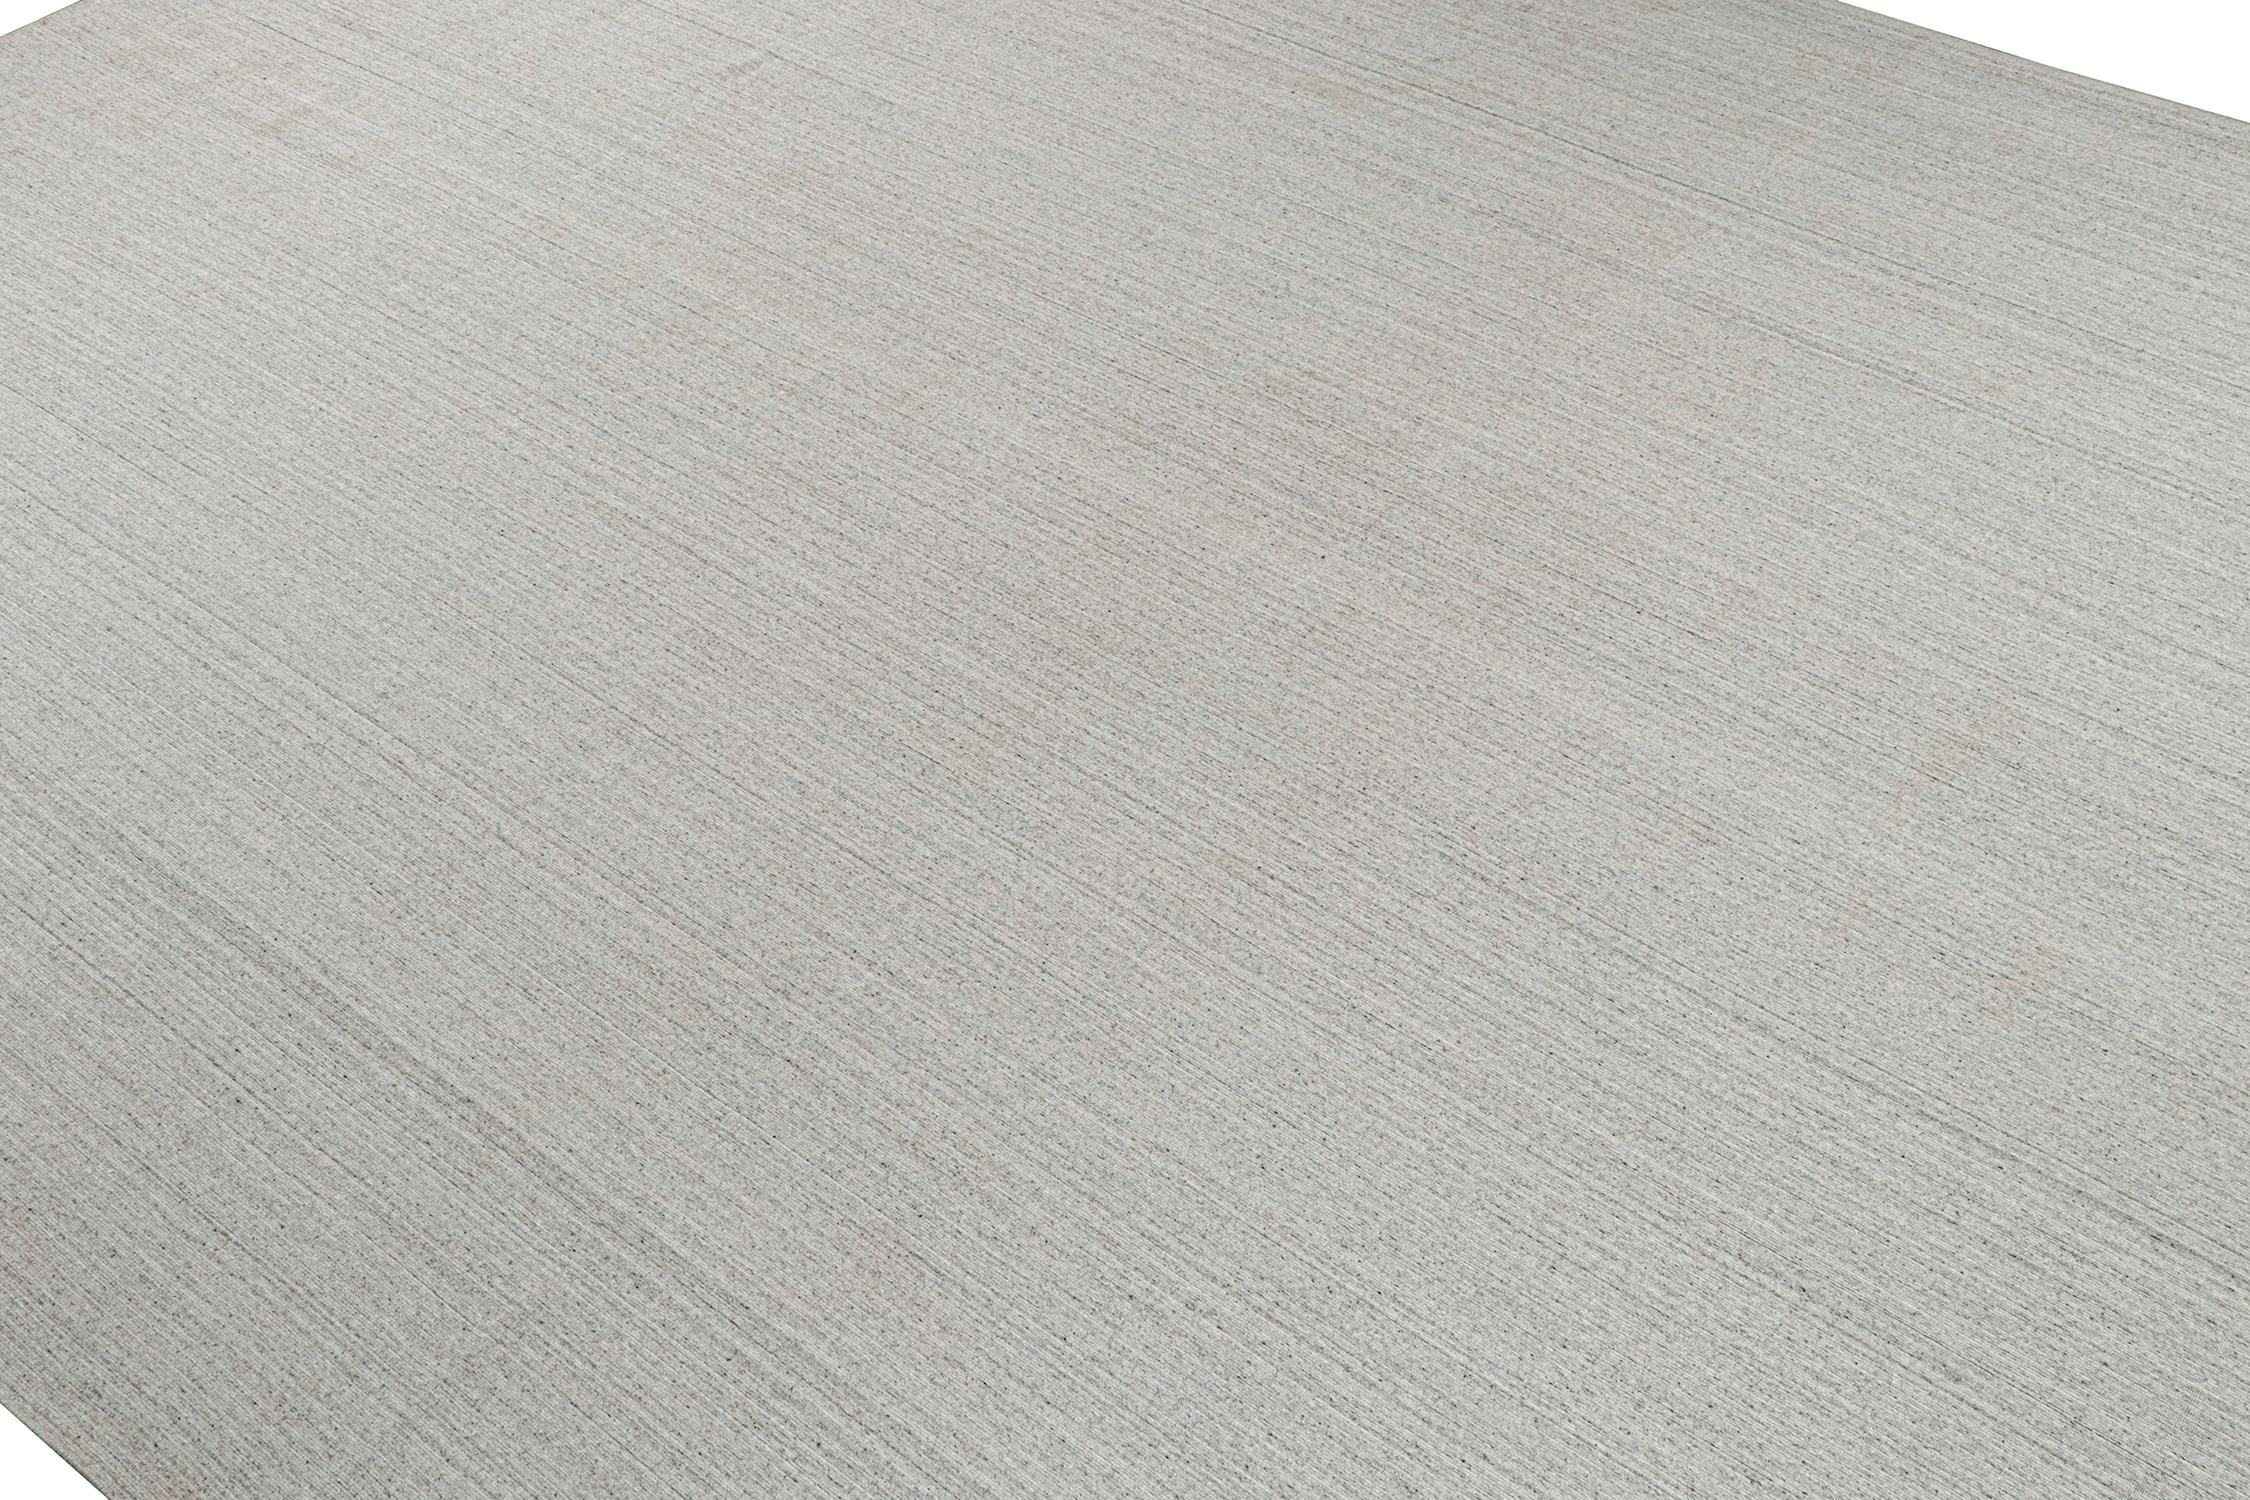 Noué à la main Rug & Kilim's Modern Rug in Solid Gray and Off-White Striae (tapis moderne en gris uni et rayures blanc cassé) en vente